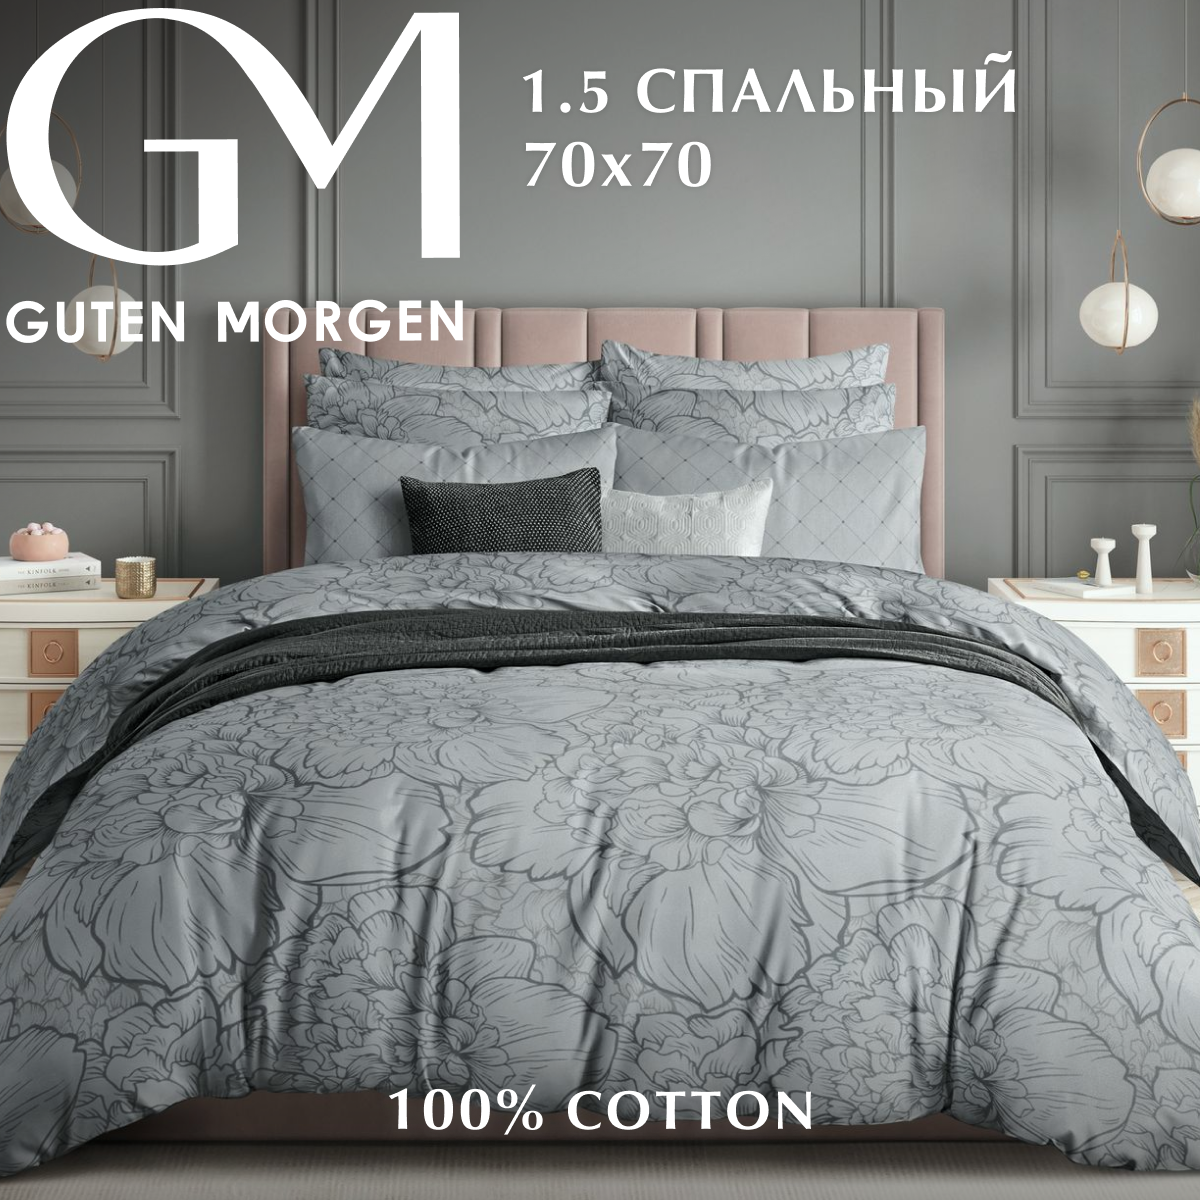 Комплект постельного белья, Бязь, Guten Morgen, 1.5 спальный с нав. 70х70 см, рис.1075, Twilight peonies